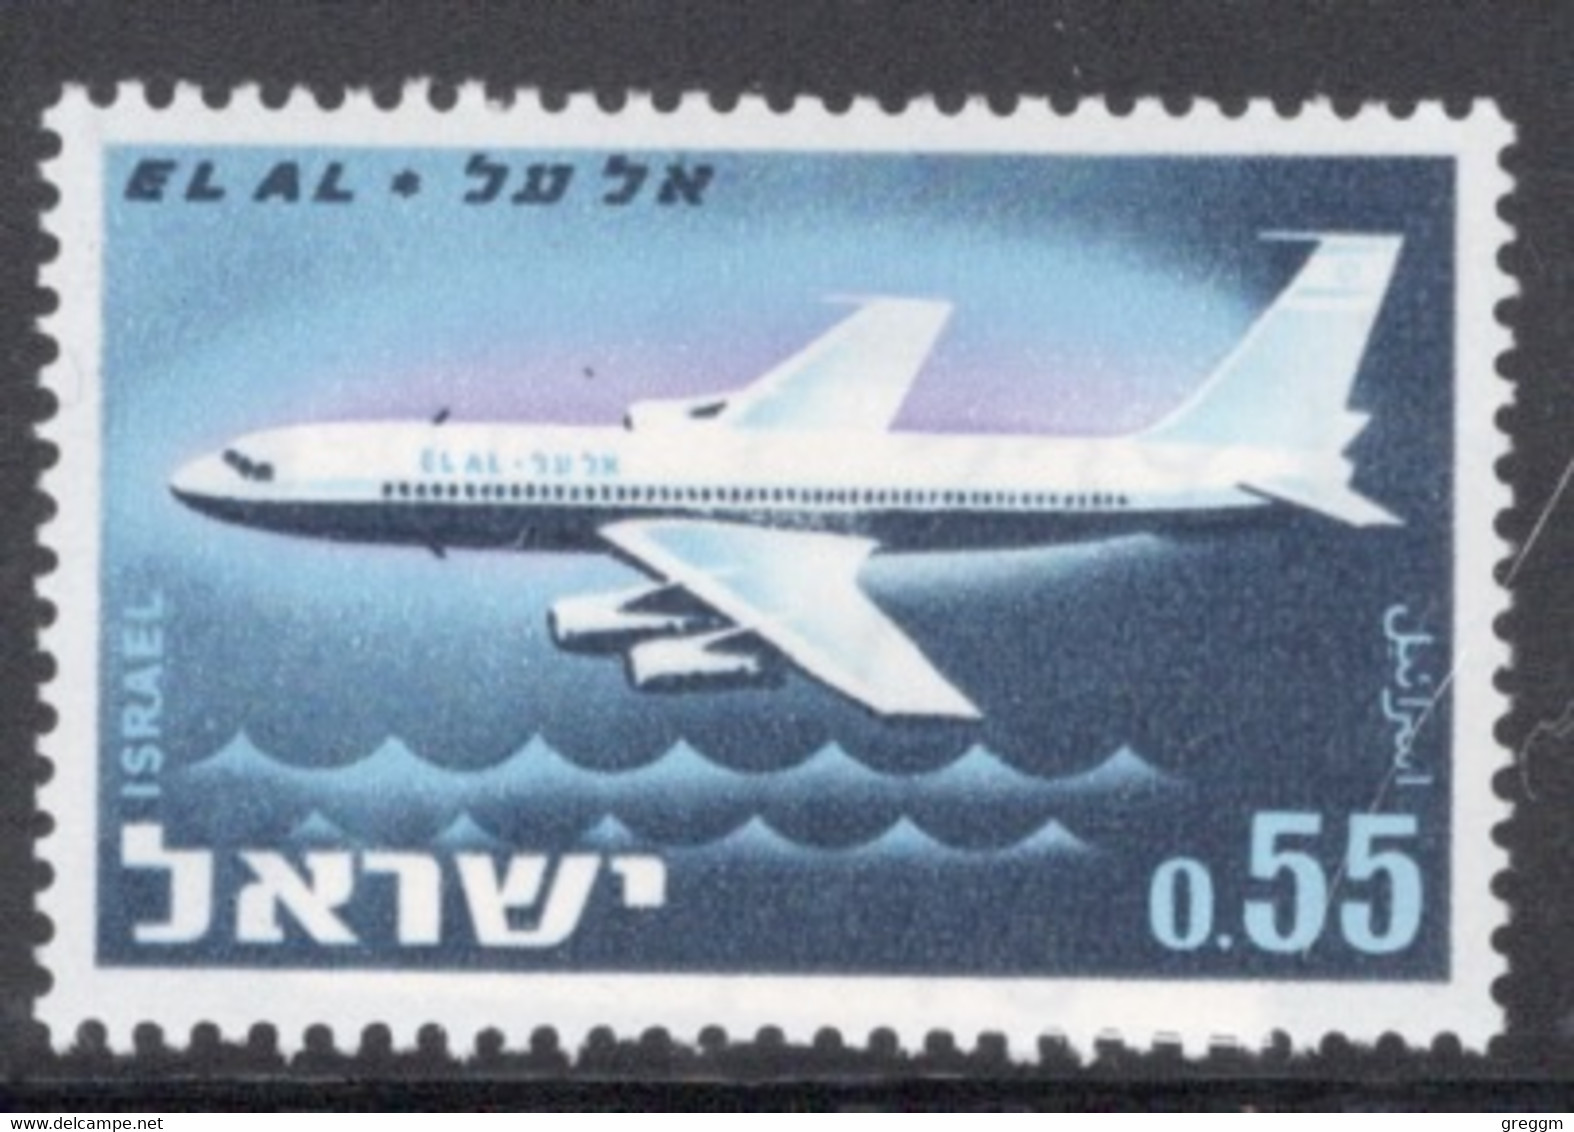 Israel 1962 Single Stamp Celebrating El Al Airline In Unmounted Mint - Nuevos (sin Tab)